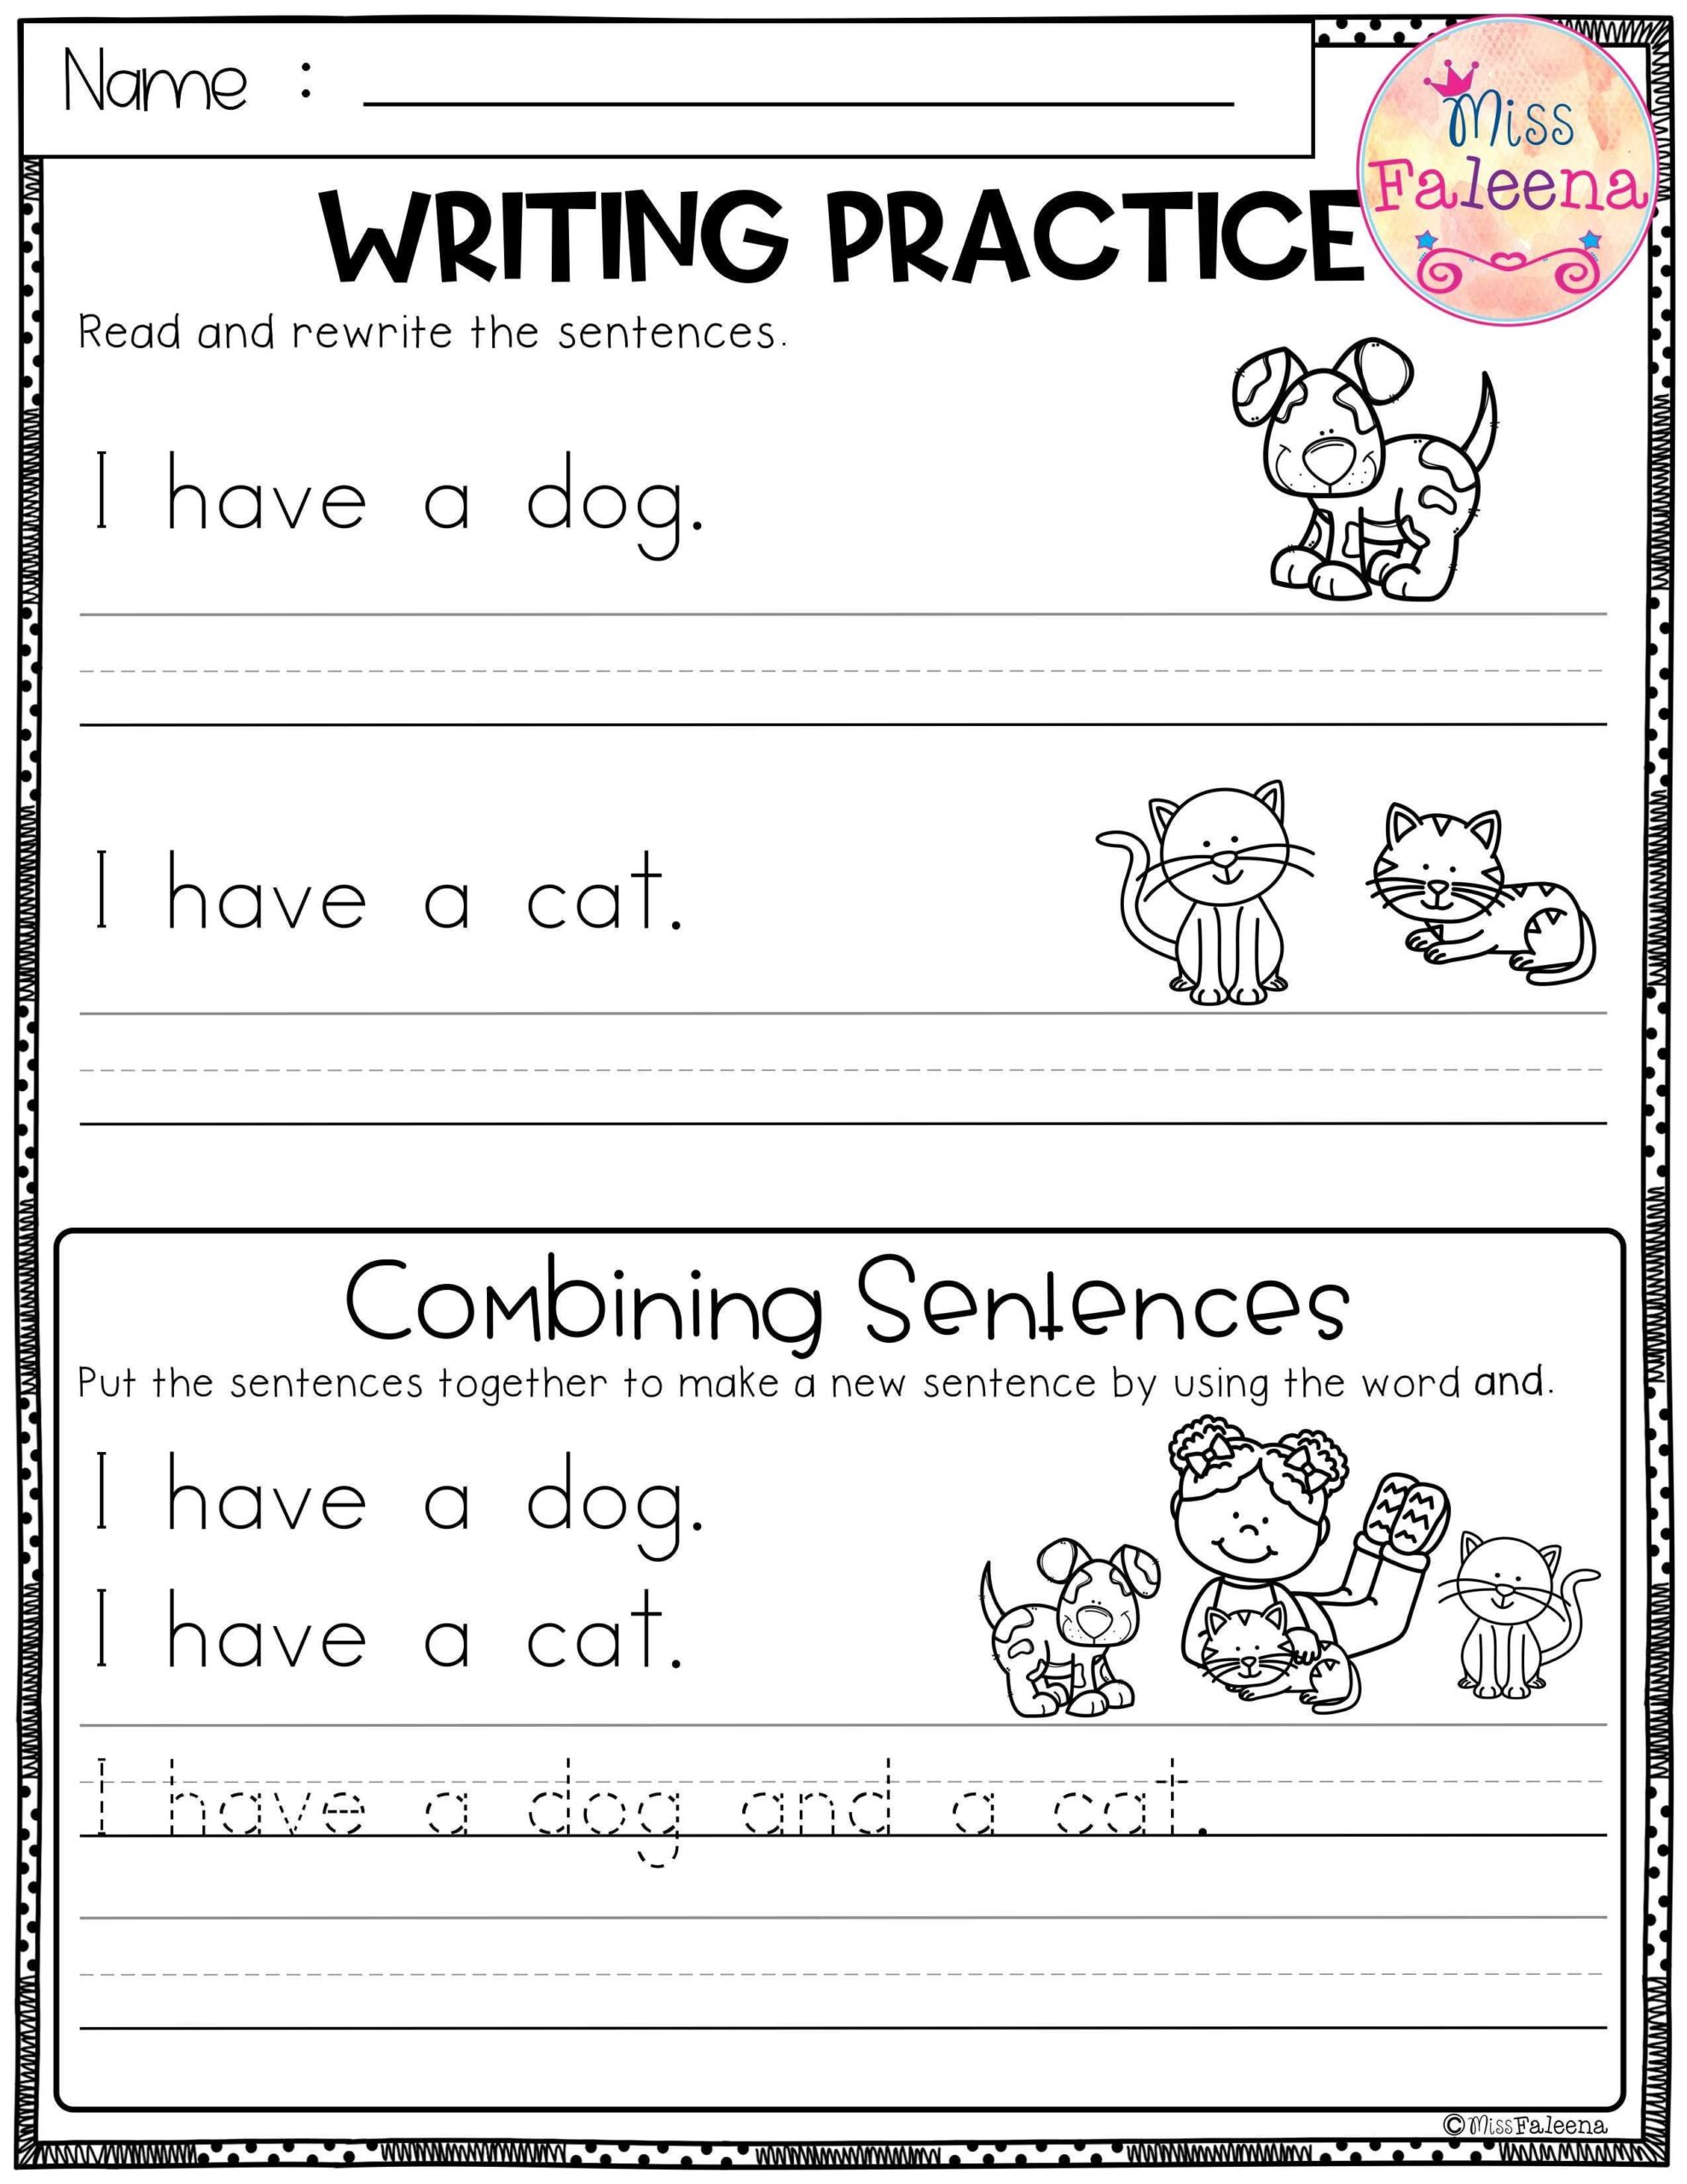 Free Writing Practice Combining Sentences Writing Sentences Worksheets Writing Practice Writing Sentences Kindergarten